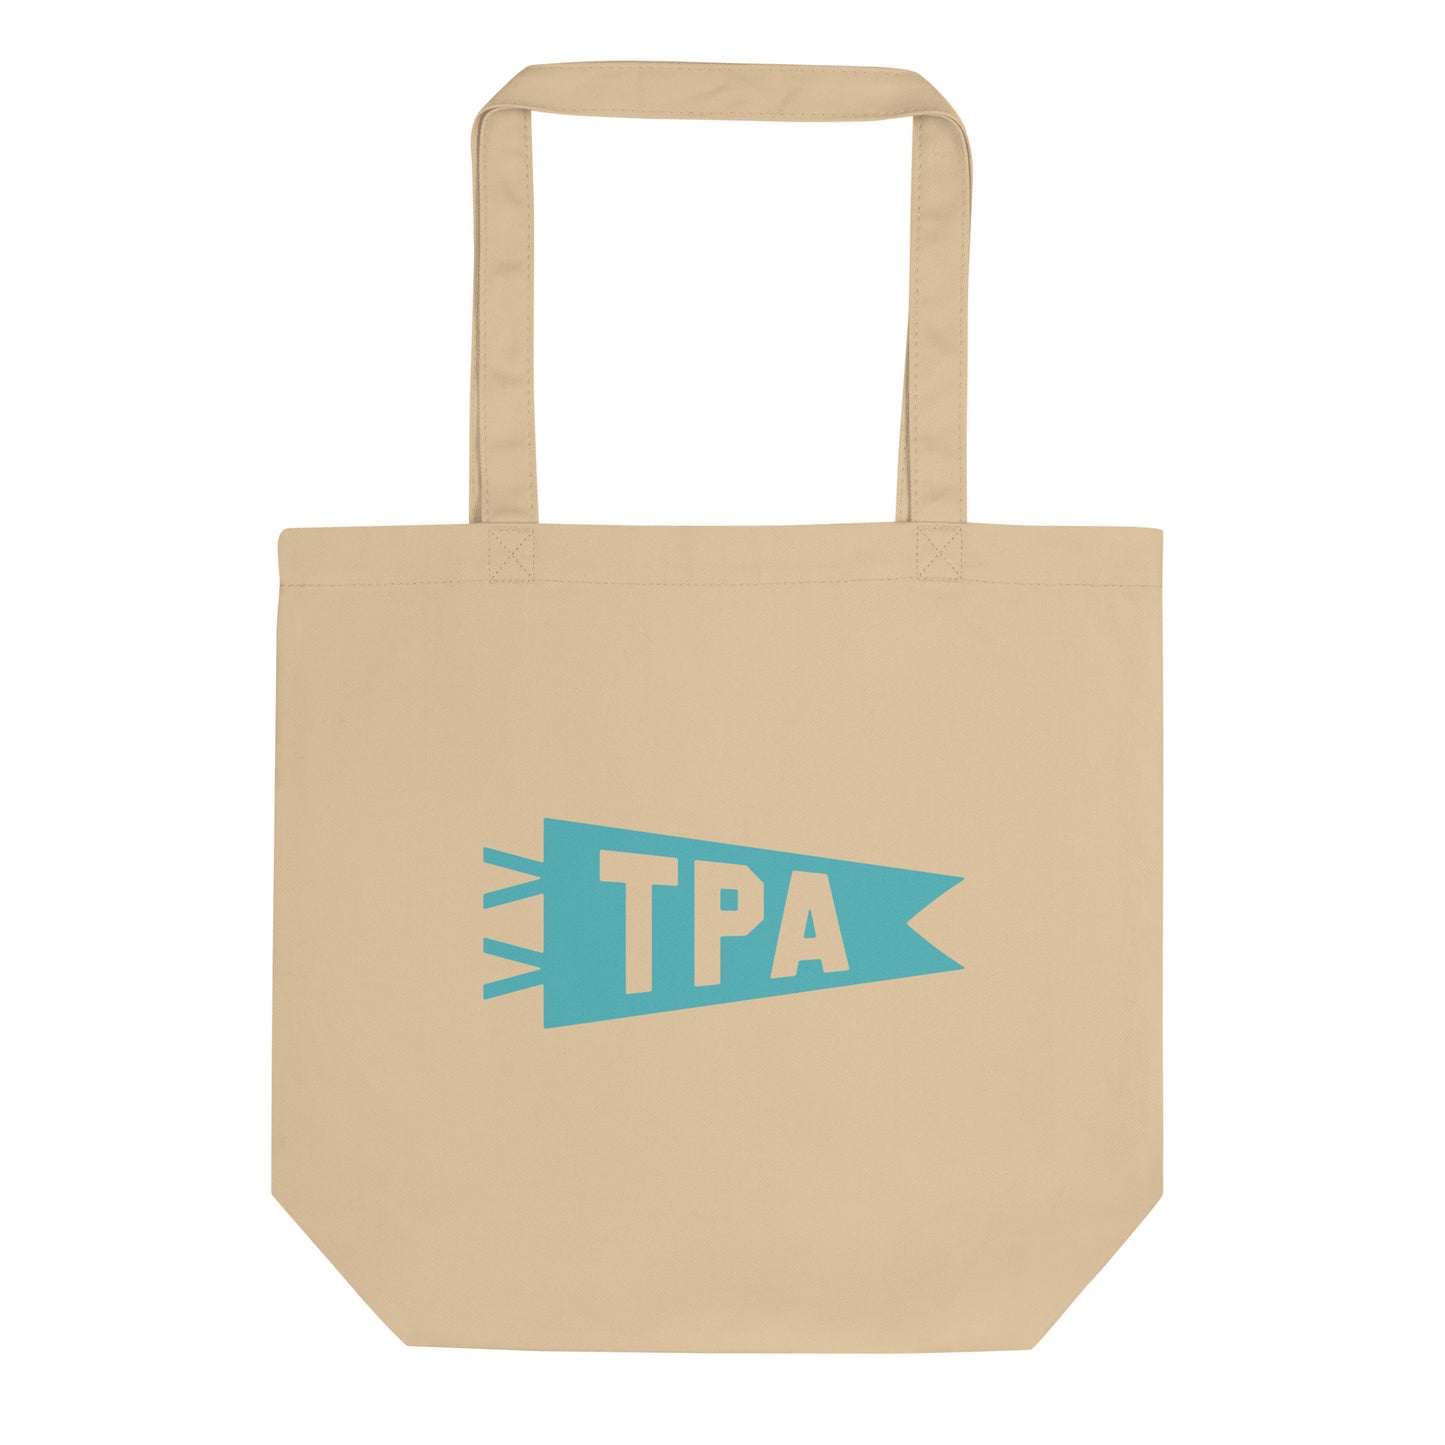 Cool Travel Gift Organic Tote Bag - Viking Blue • TPA Tampa • YHM Designs - Image 01